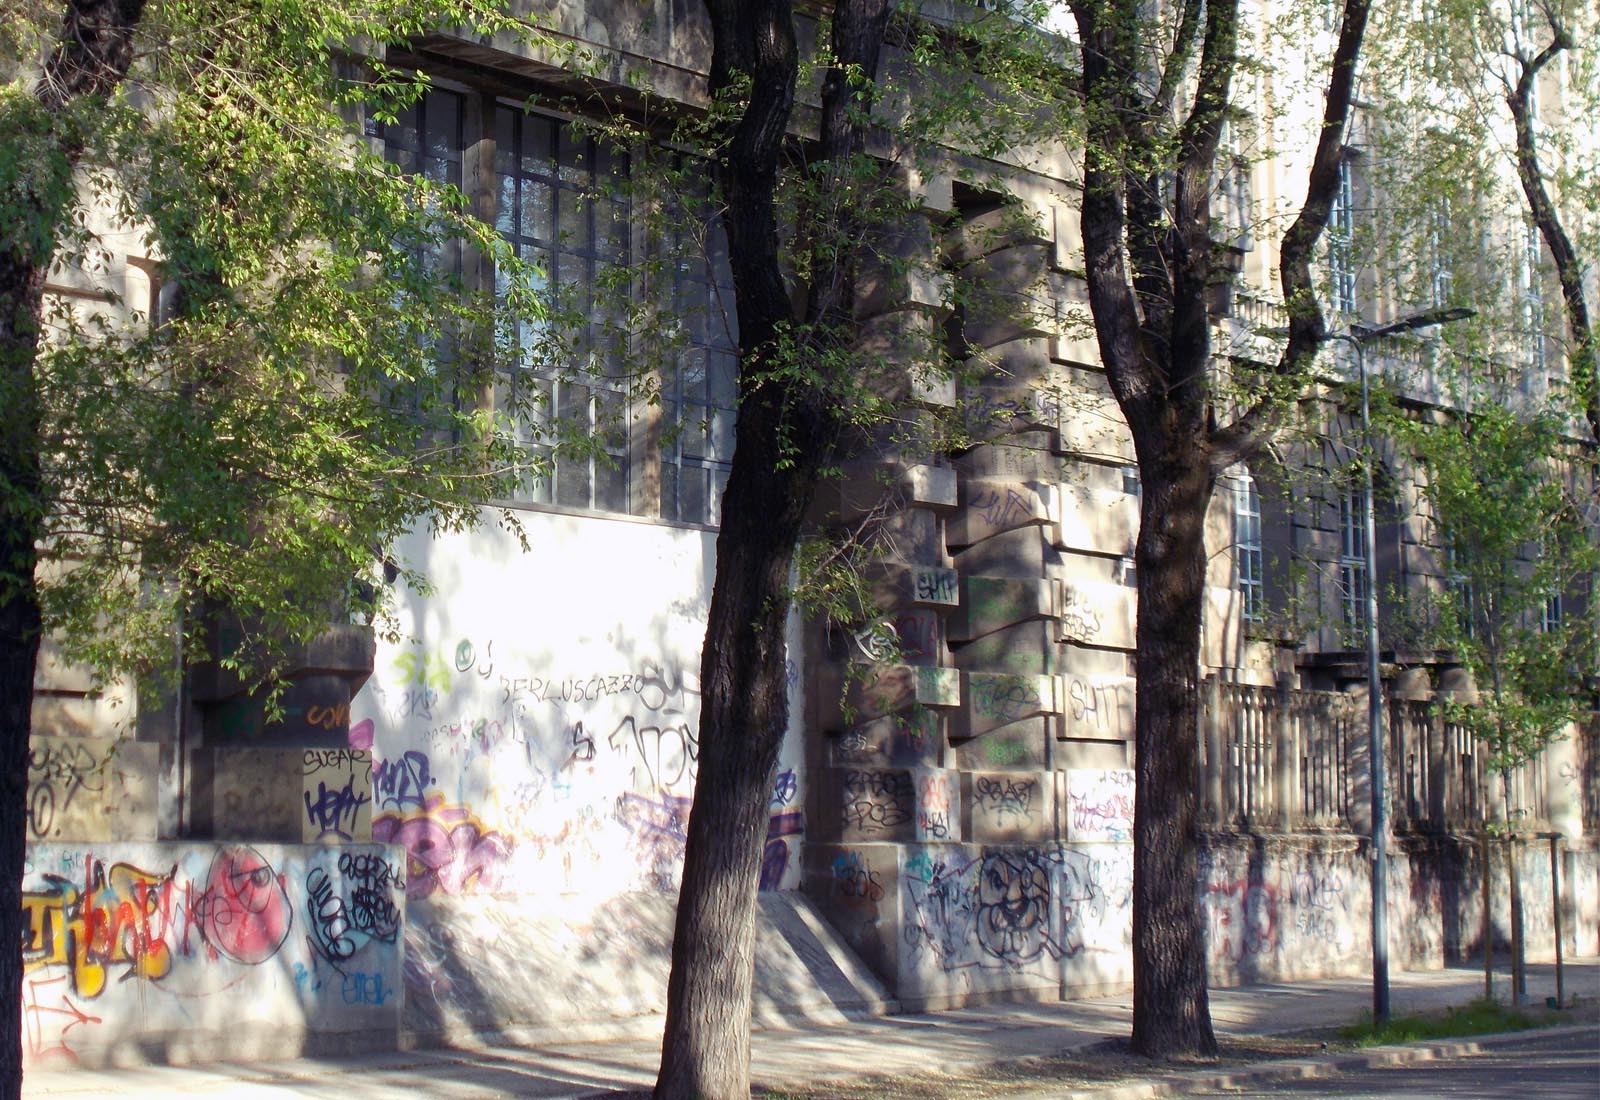 Photonics laboratories Politecnico di Milano - Detail of the facade